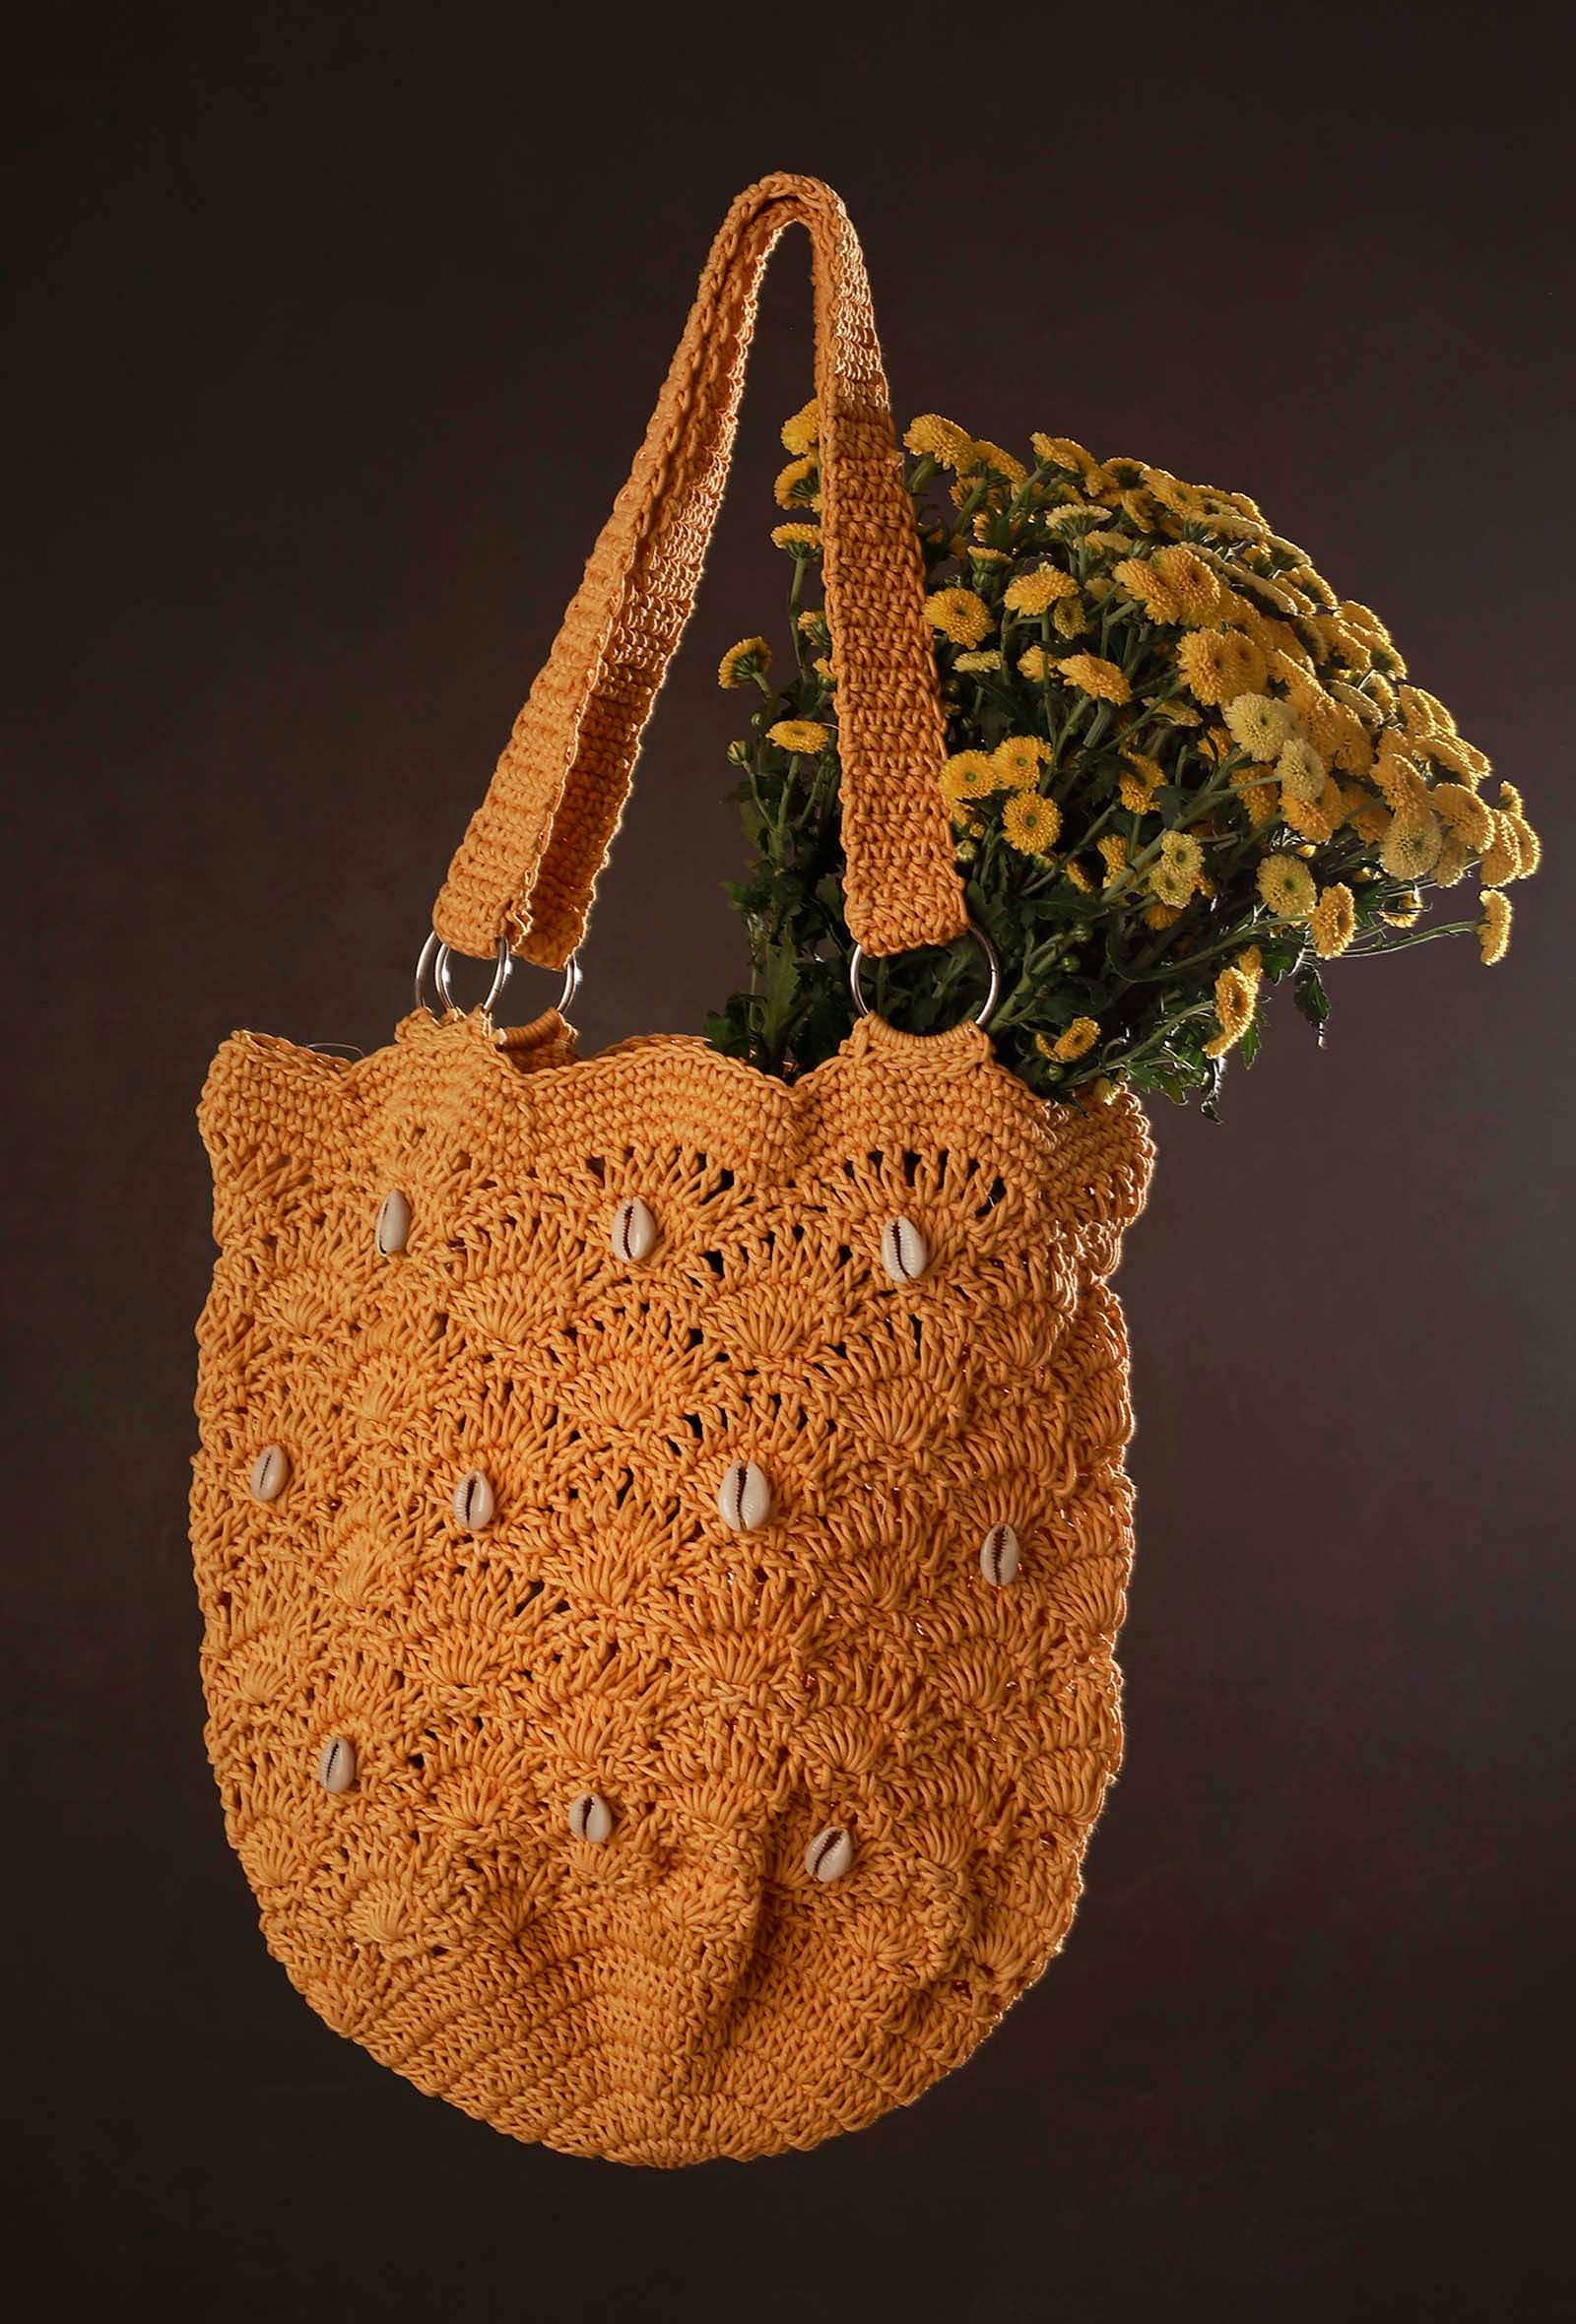 Buy Knot-it-All @ Qudsazz Women's Handmade Macrame Sling/Cross Body Handbag  in multi coloured tassels | Colourful bag | Sling bags for girls | Tassel  handbag at Amazon.in